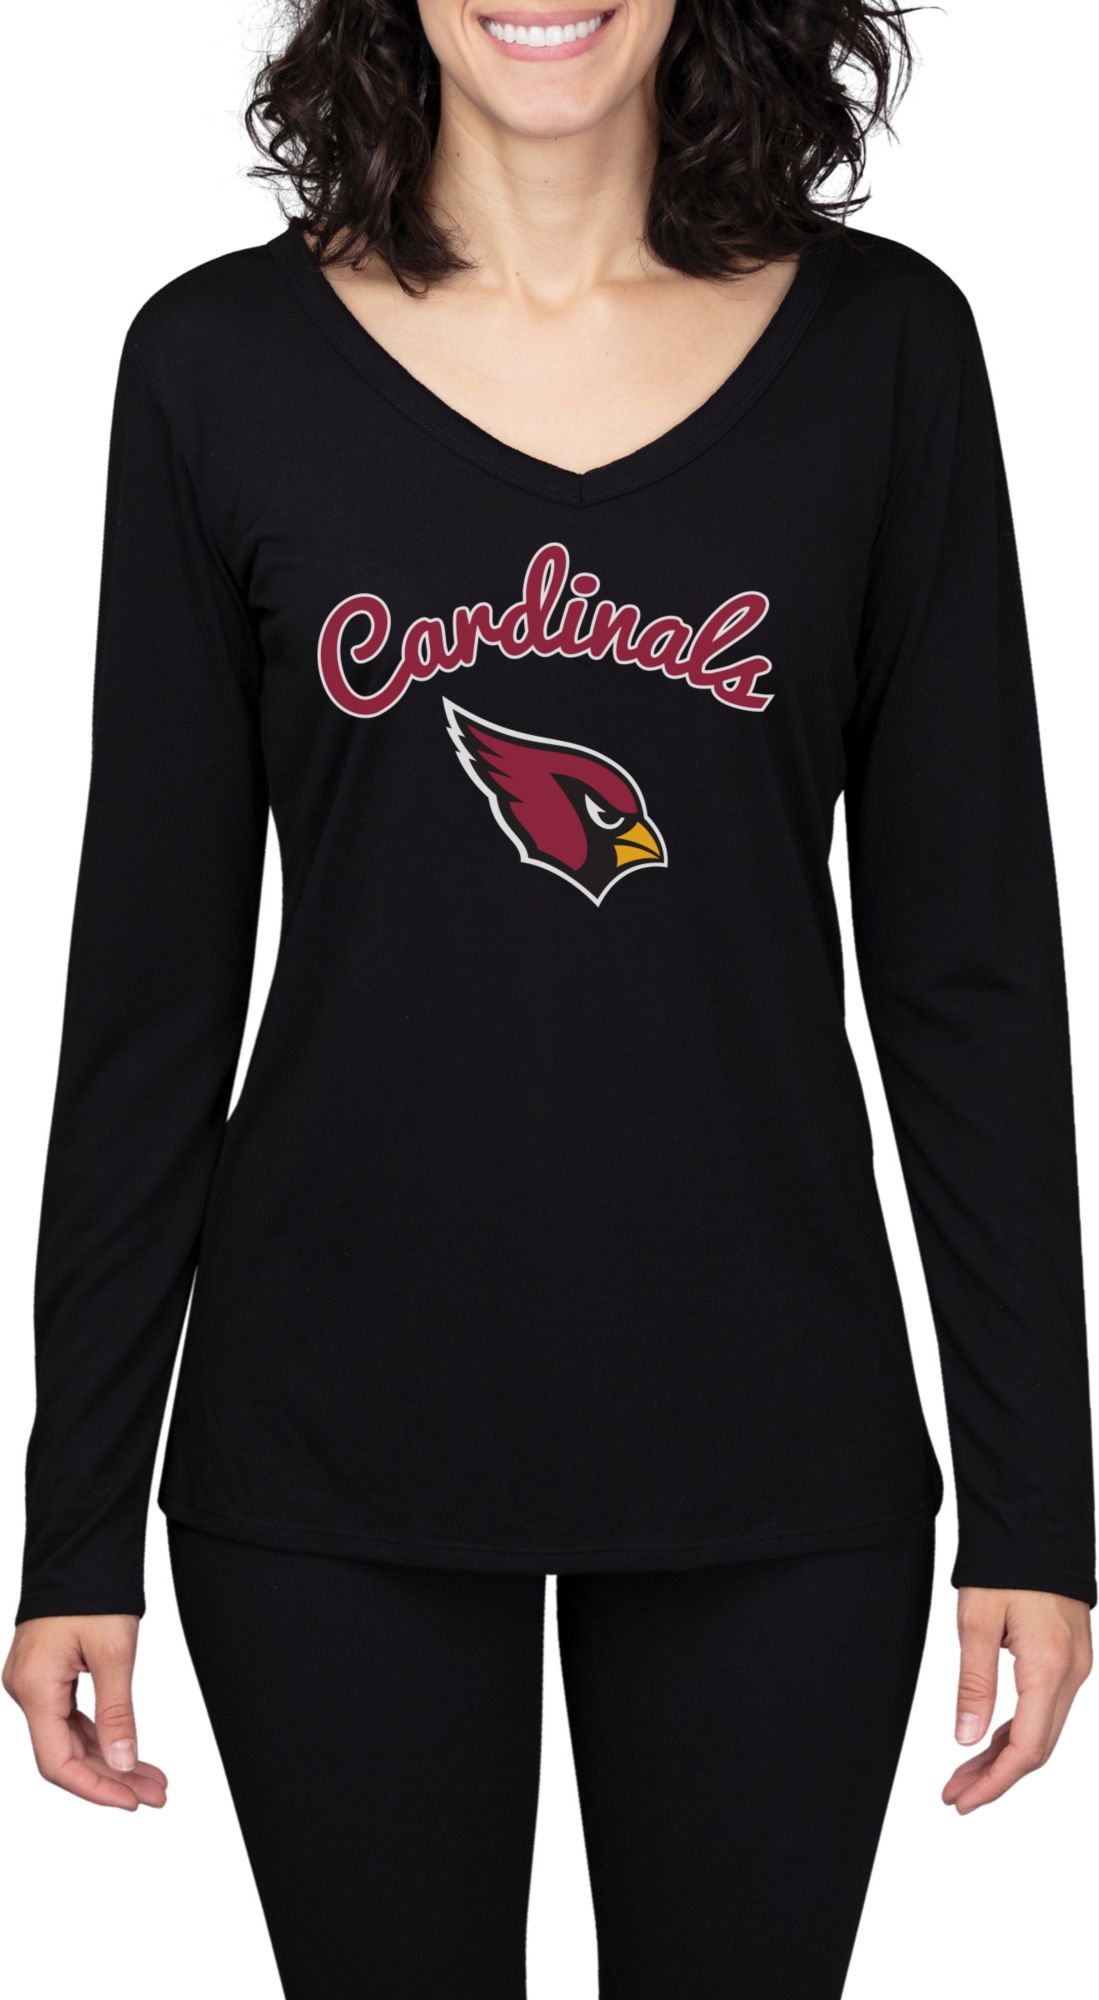 Arizona Cardinals Women T shirt